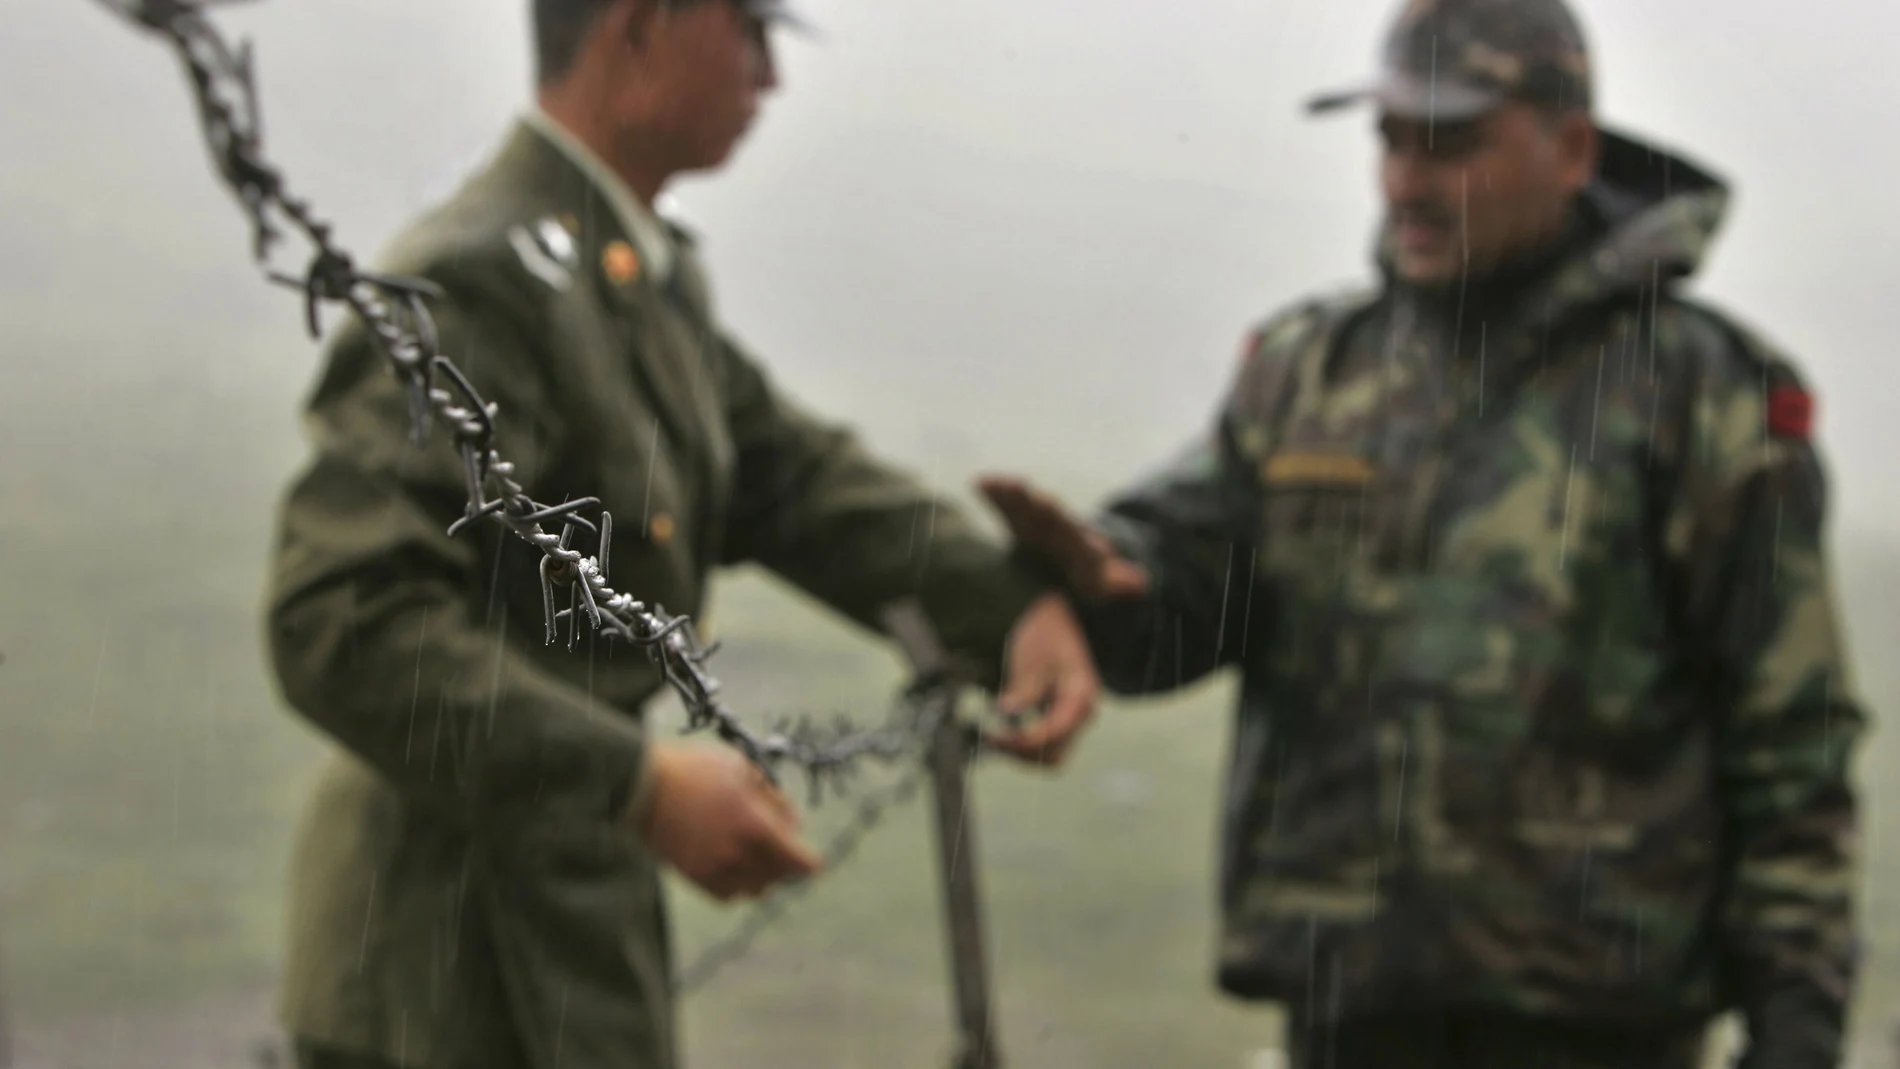 Foto de archivo en la que se ve a un soldado chino (a la izquierda) y a otro soldado indio colocando una concertina en la frontera en Sikkim